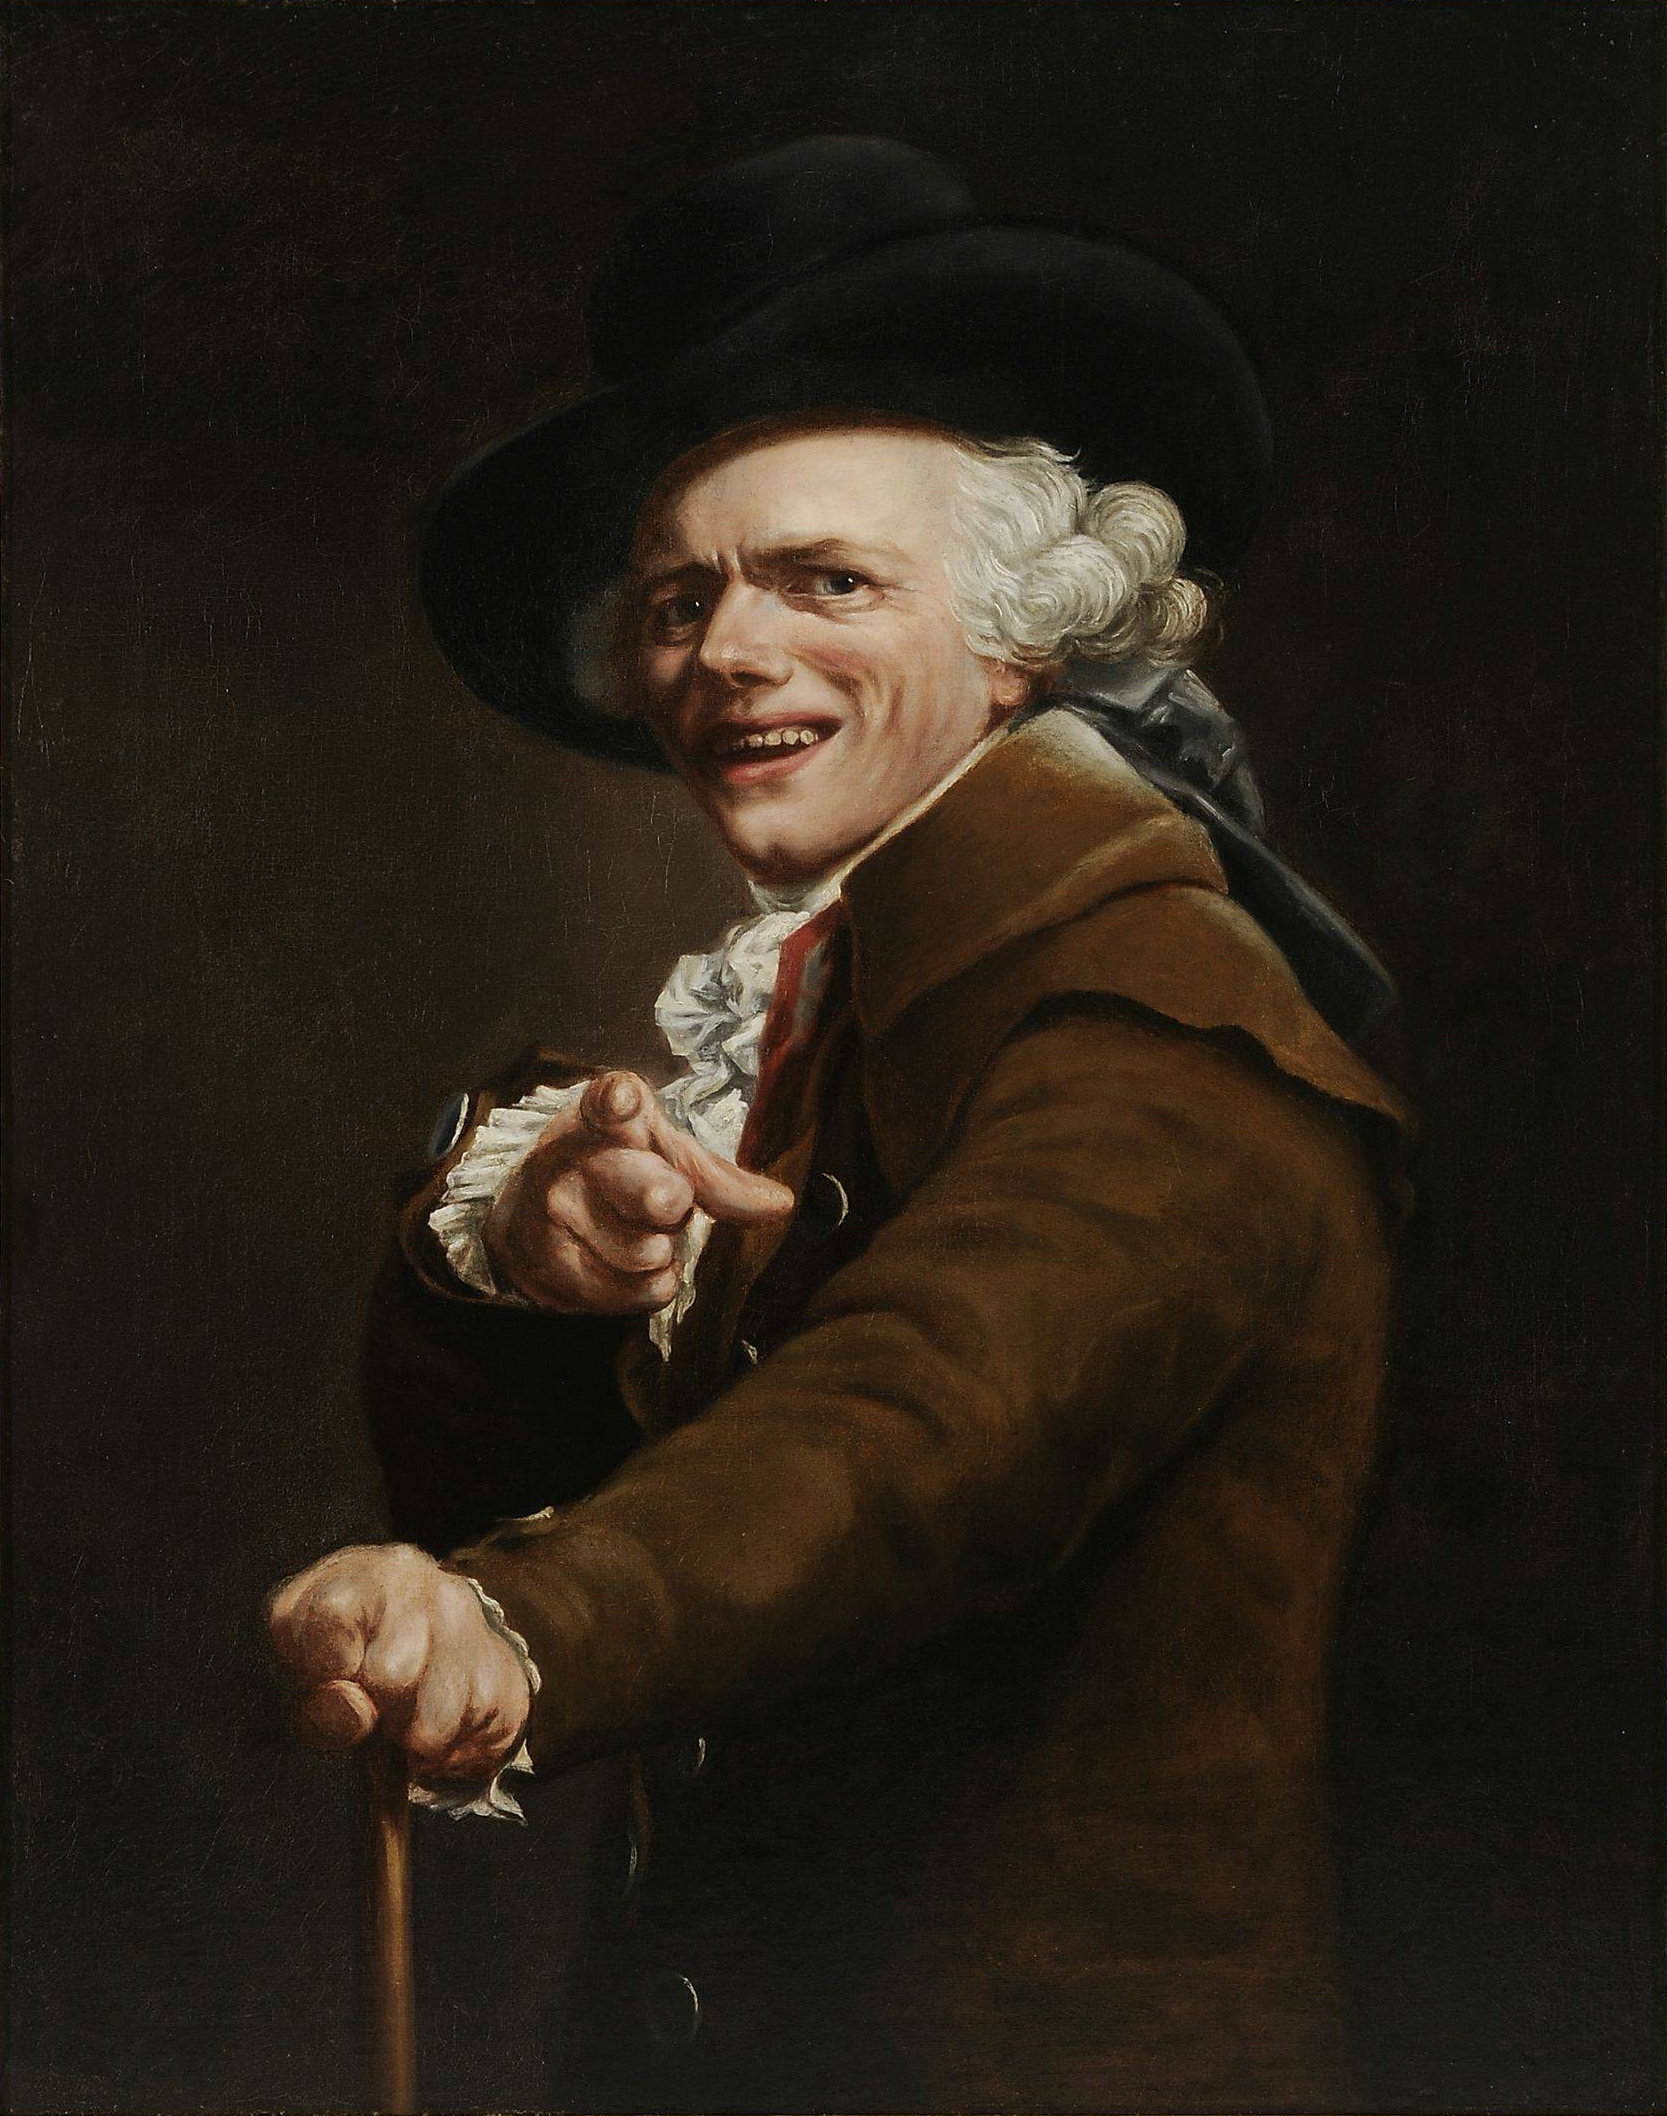 Joseph Ducreux - 26 Giugno 1735 - 24 Luglio 1802